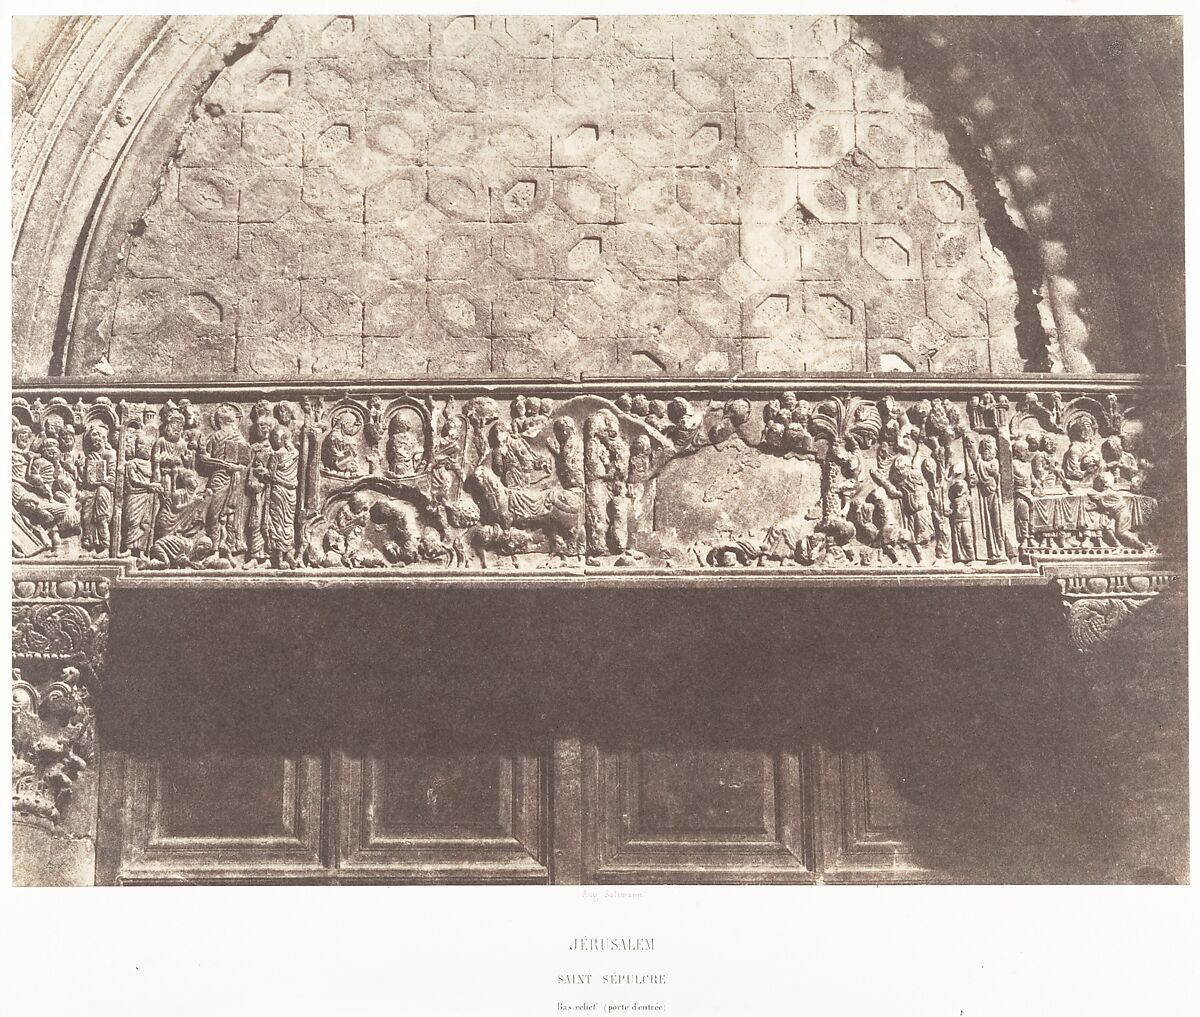 Jérusalem, Saint-Sépulcre, Bas-relief (porte d'entrée), Auguste Salzmann (French, 1824–1872), Salted paper print from paper negative 